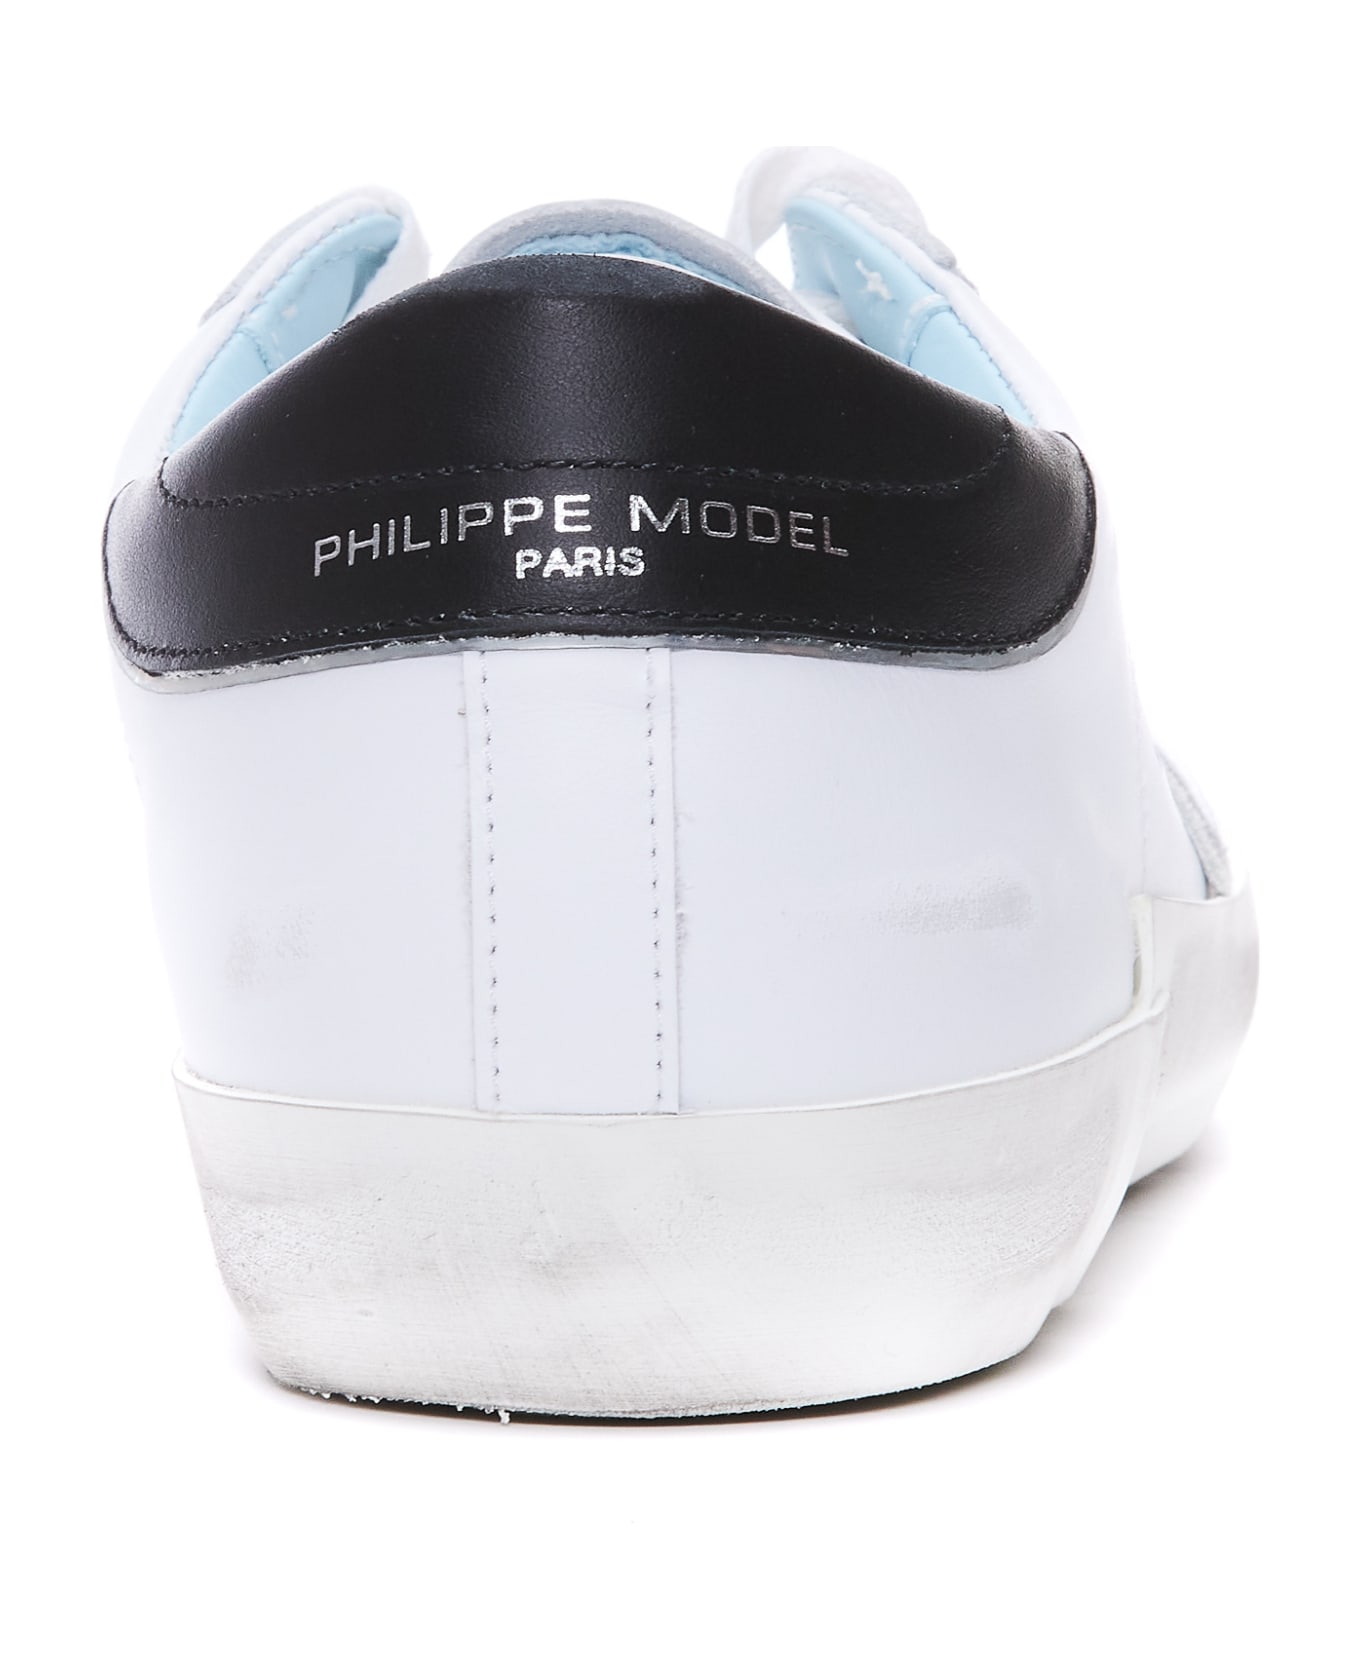 Philippe Model Prsx Sneakers - Bianco/nero